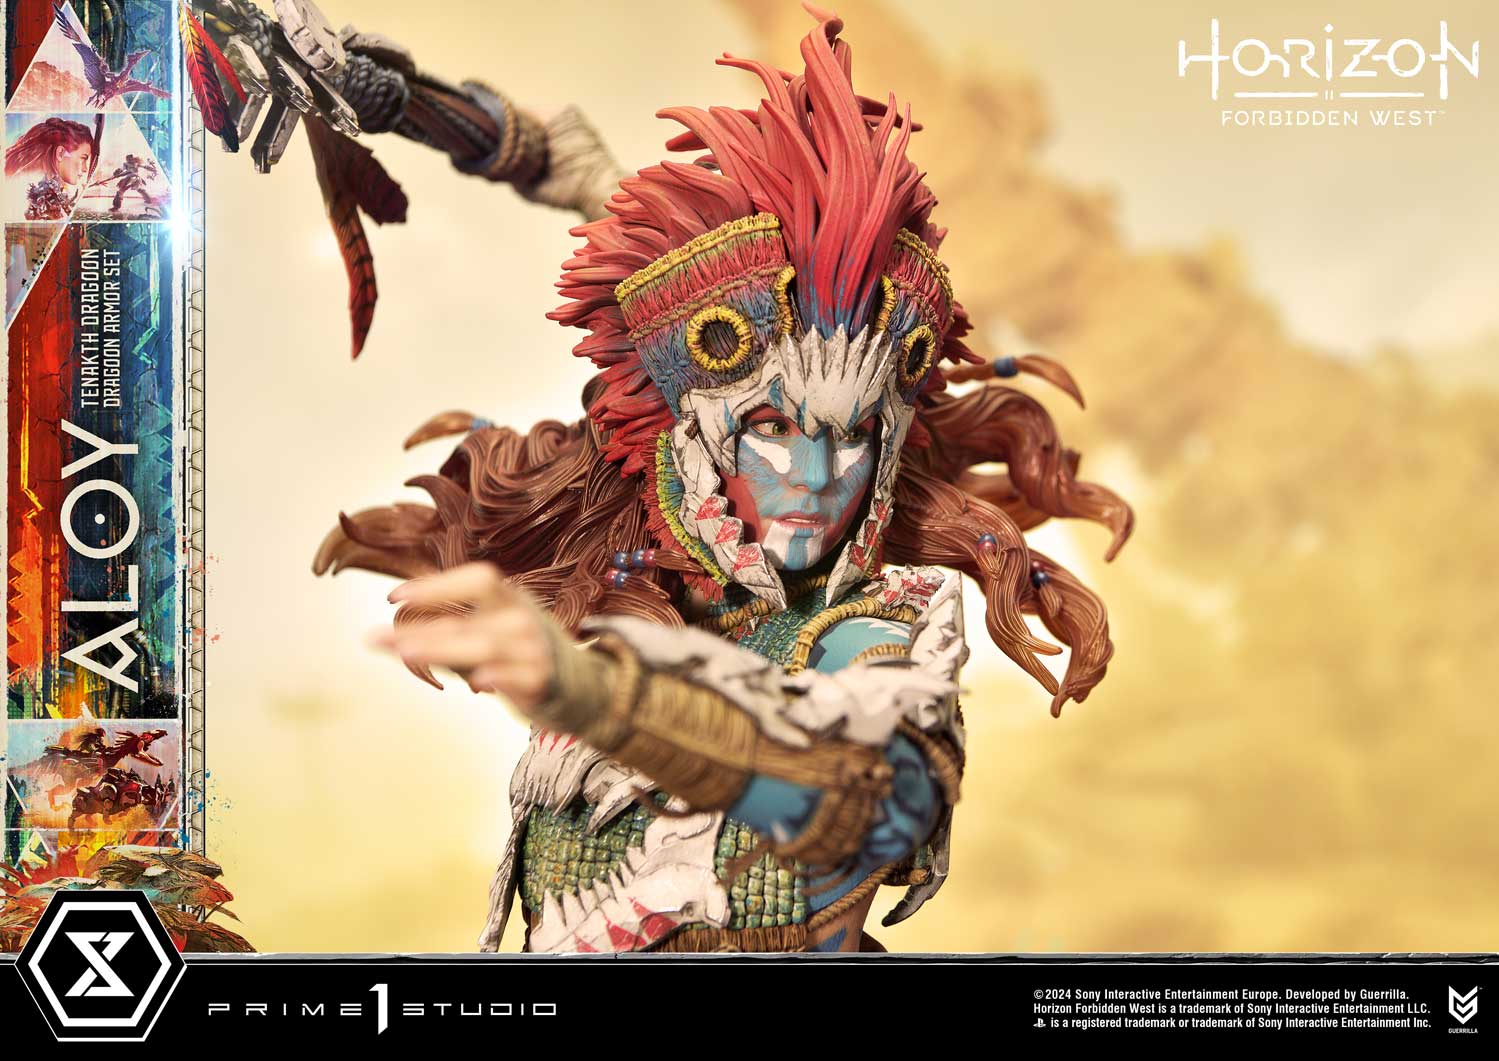 Фигурка Элой Prime 1 Studio Horizon Forbidden West стоит 1200 долларов.